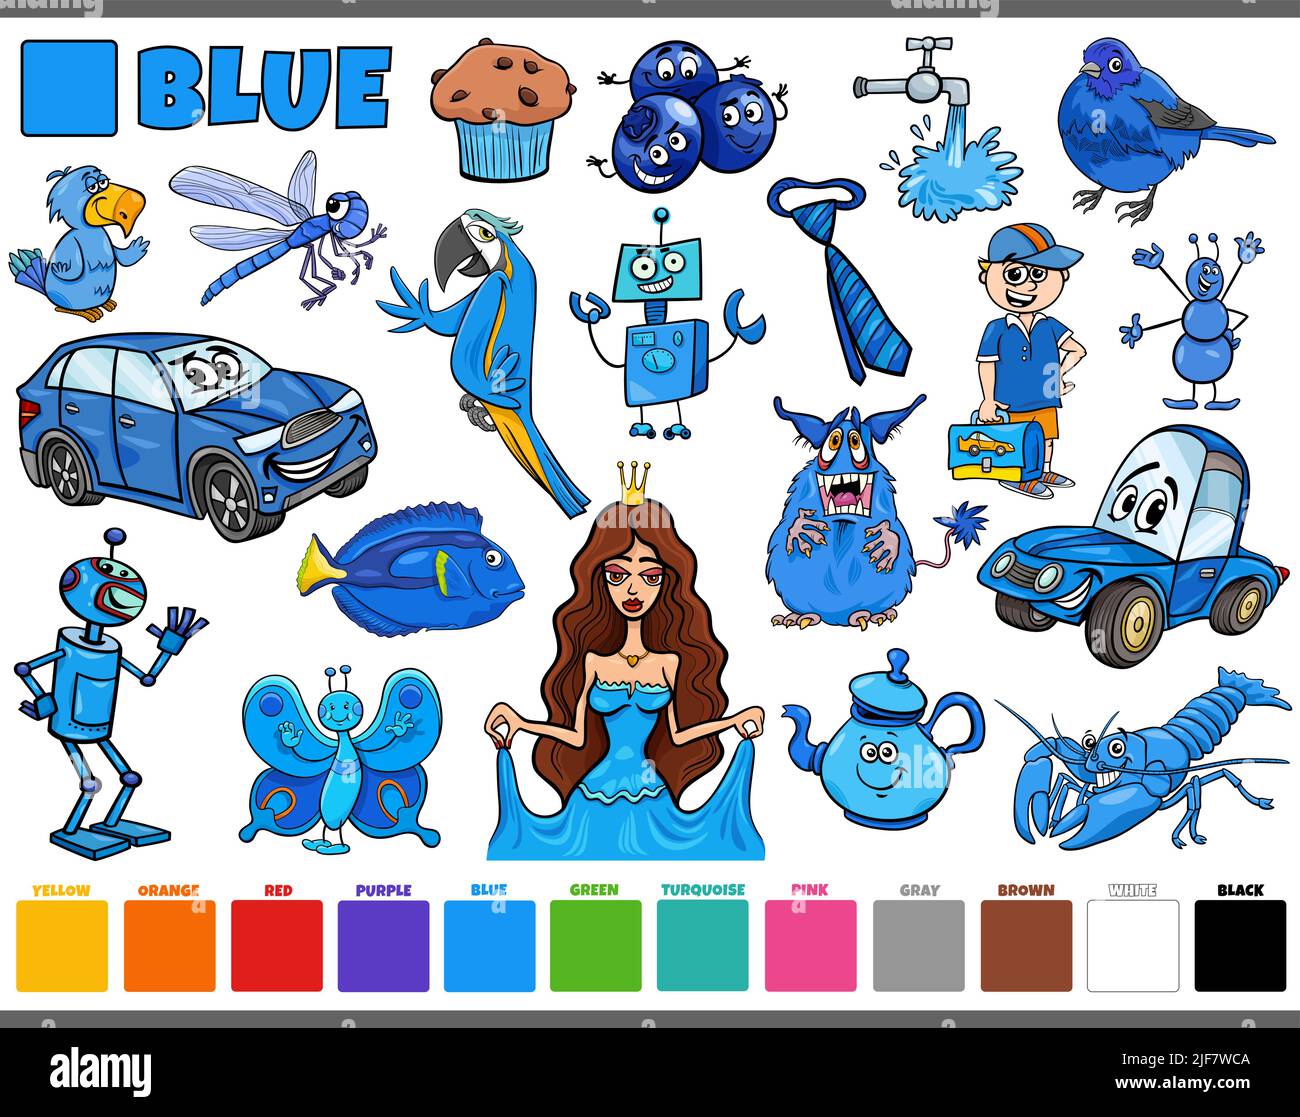 Ensemble d'illustrations de dessins animés avec des personnages de bandes dessinées tels que des personnes et des animaux ou des objets en bleu Illustration de Vecteur